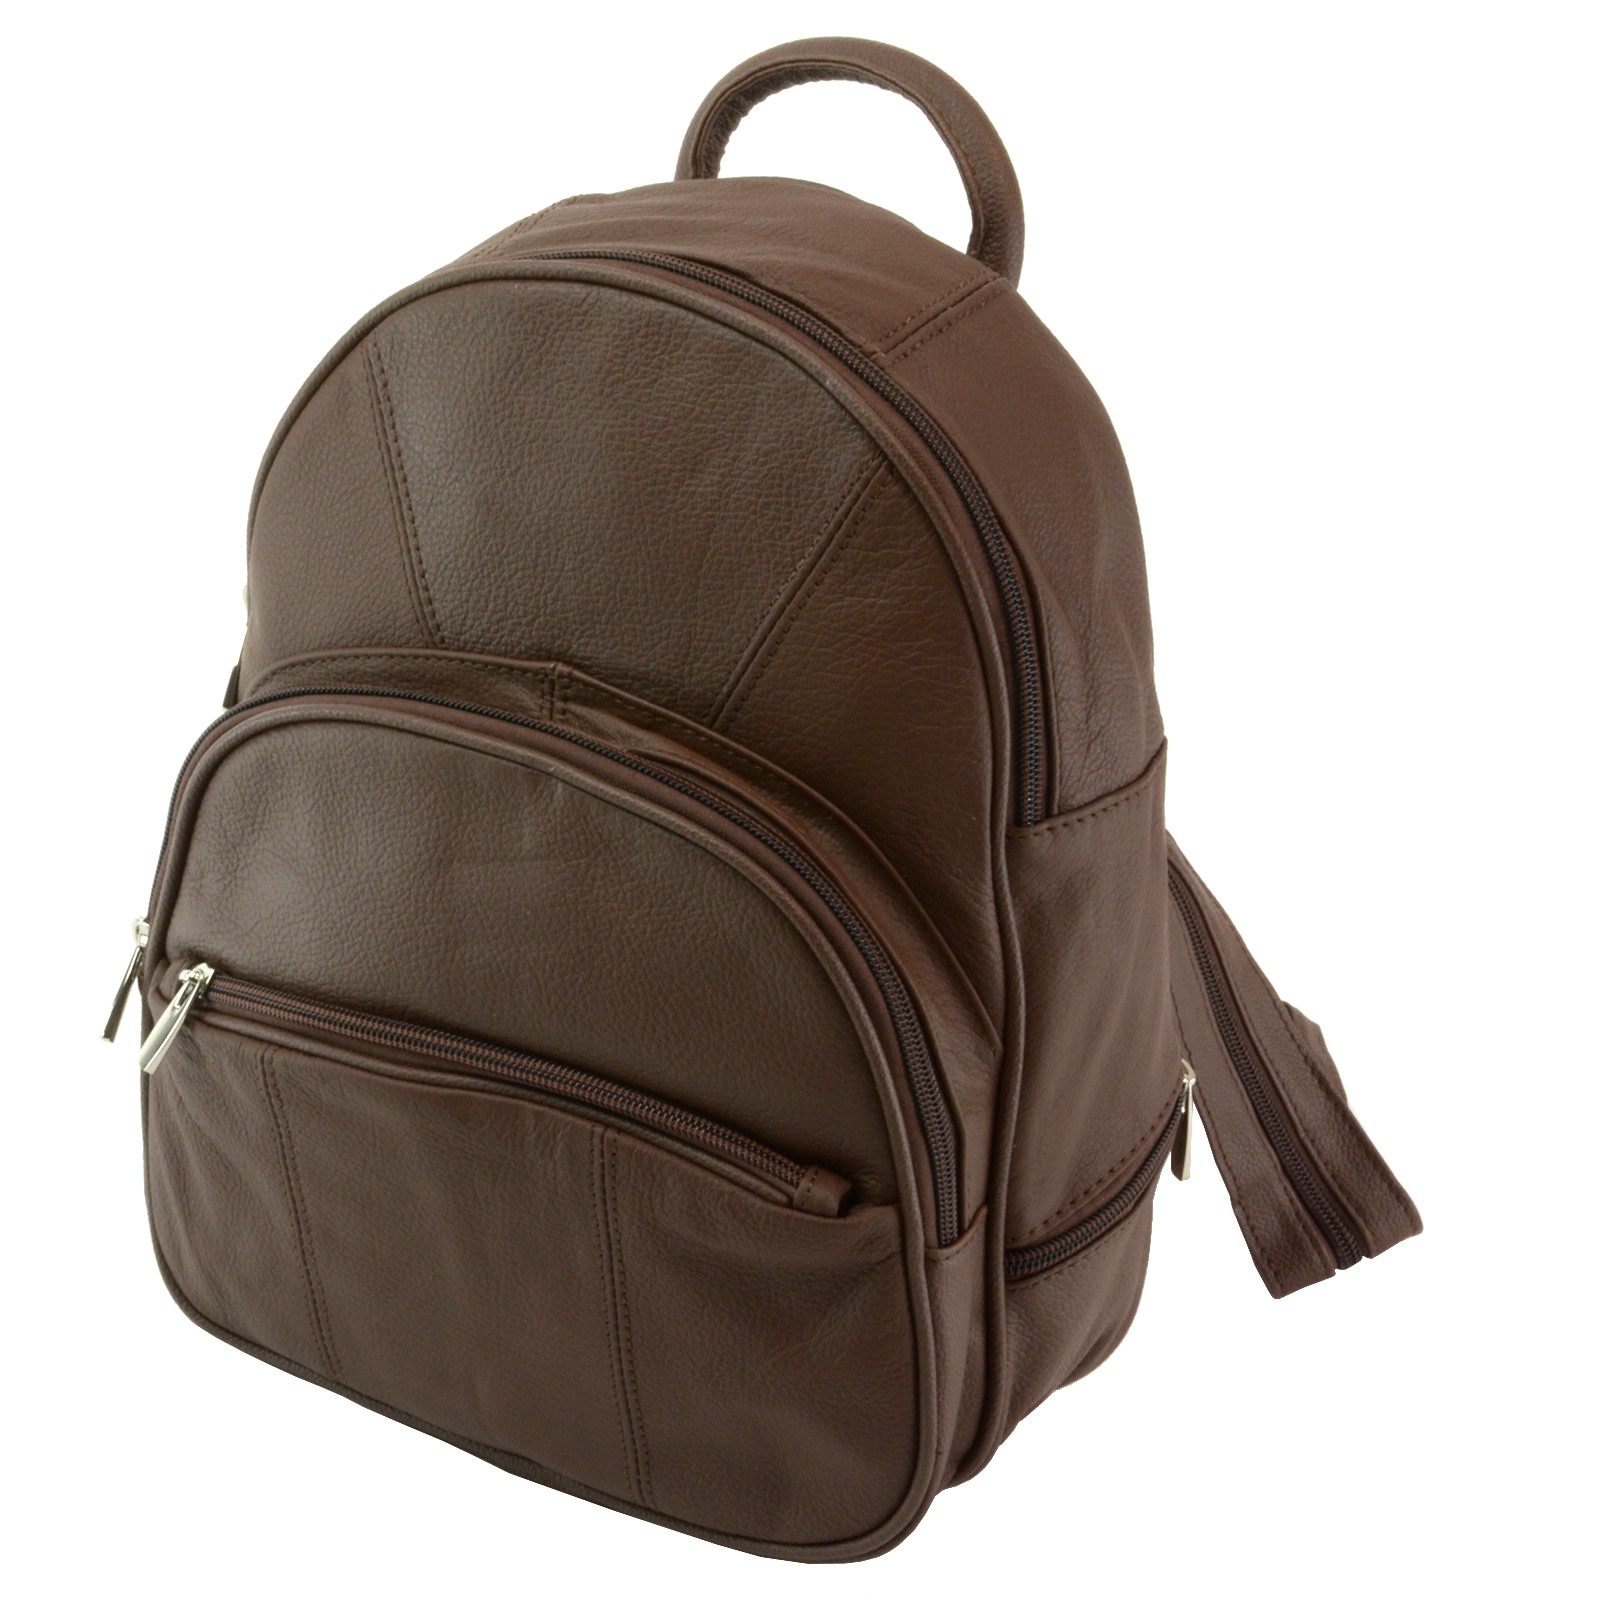 SBR Designs New Leather Backpack Purse Sling Bag Back Pack Shoulder Handbag Organizer Pocket